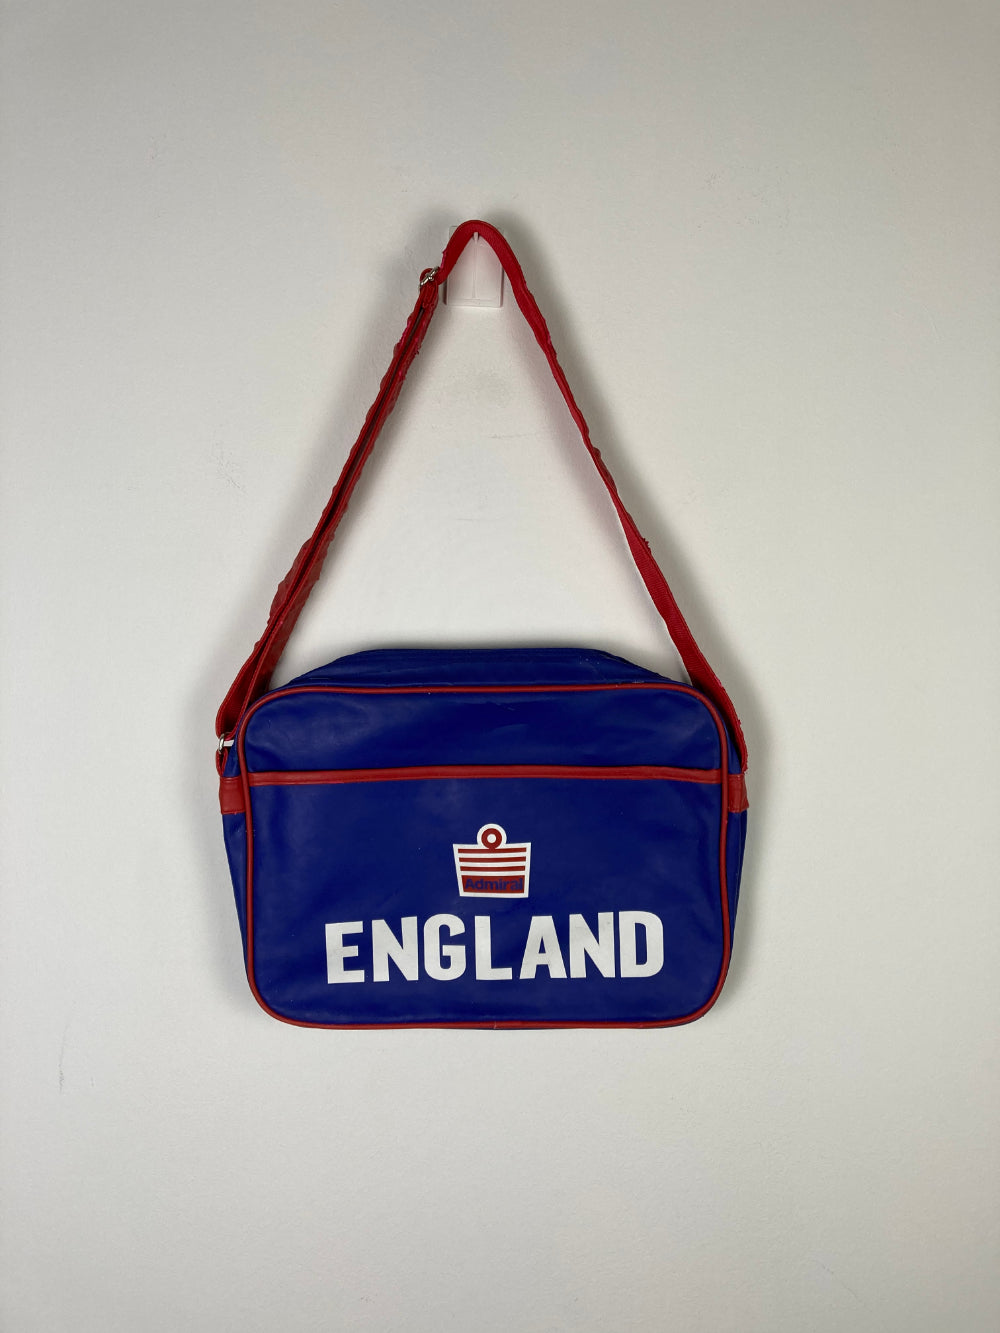 Original England Bag 1980s